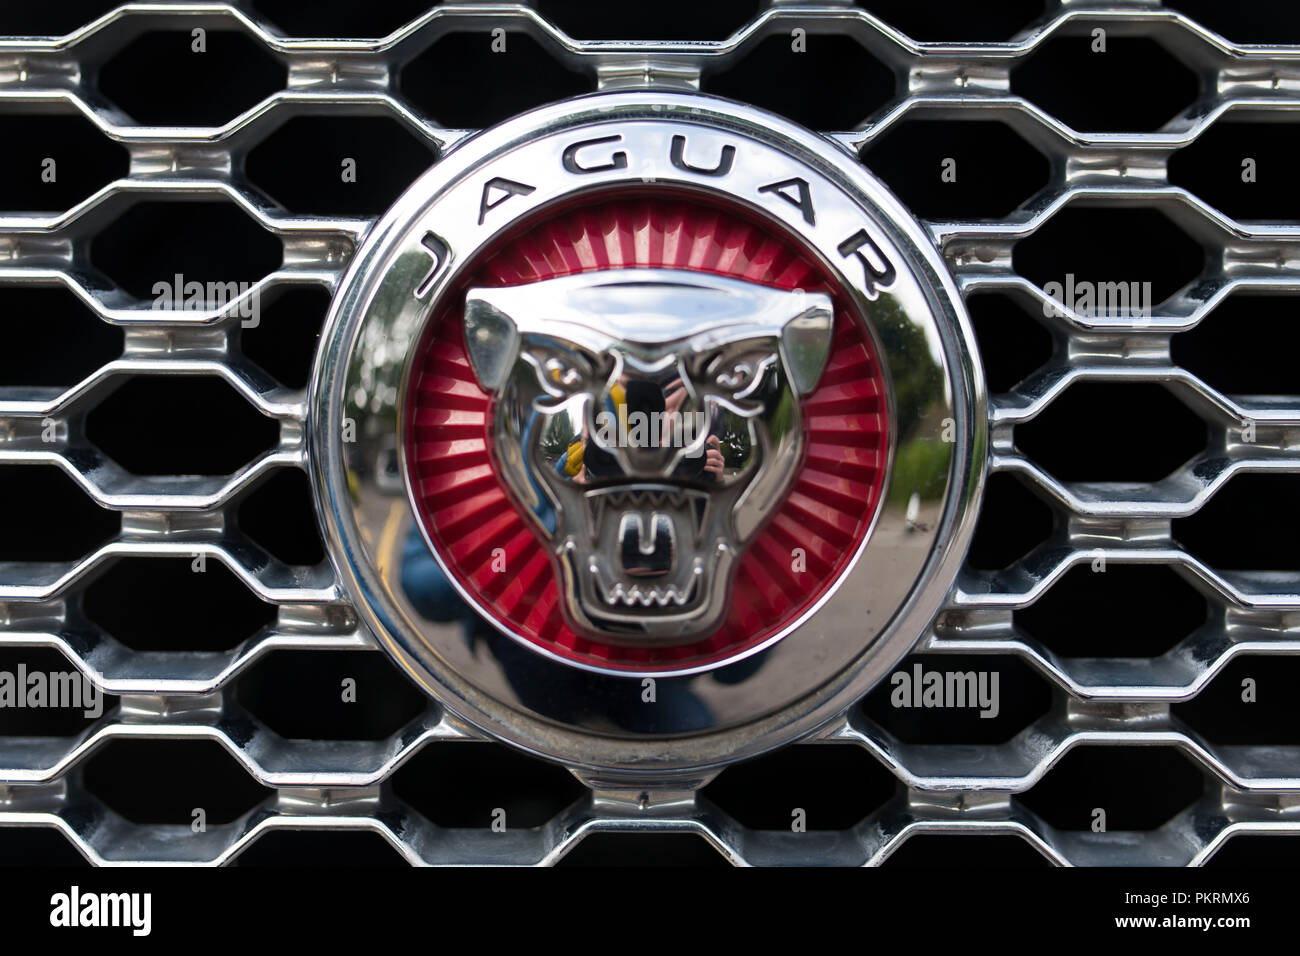 Jaguar car badge sign logo Stock Photo - Alamy